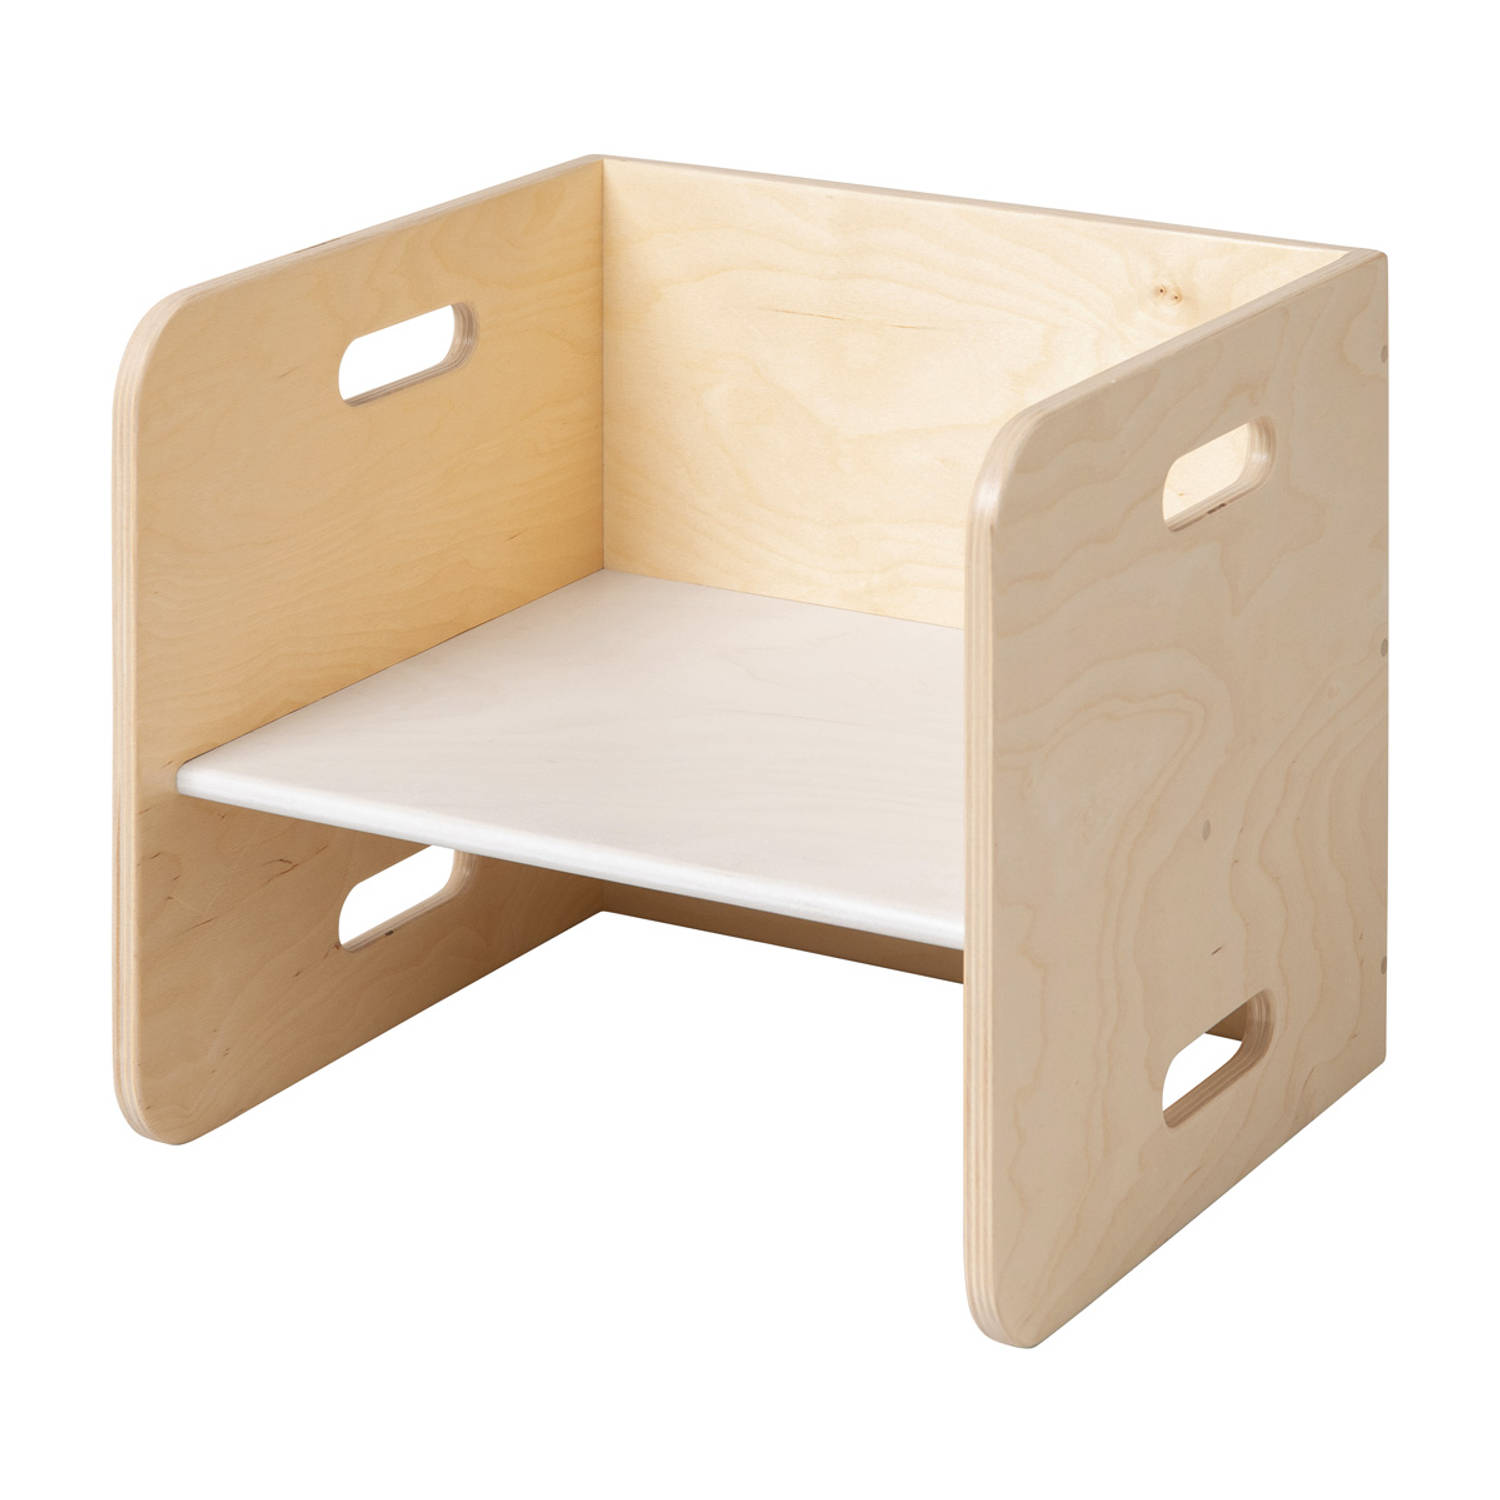 Van Dijk Toys houten kubusstoel-kinderstoel Wit 32x32x32cm vanaf 1 jaar (kinderopvang kwaliteit)